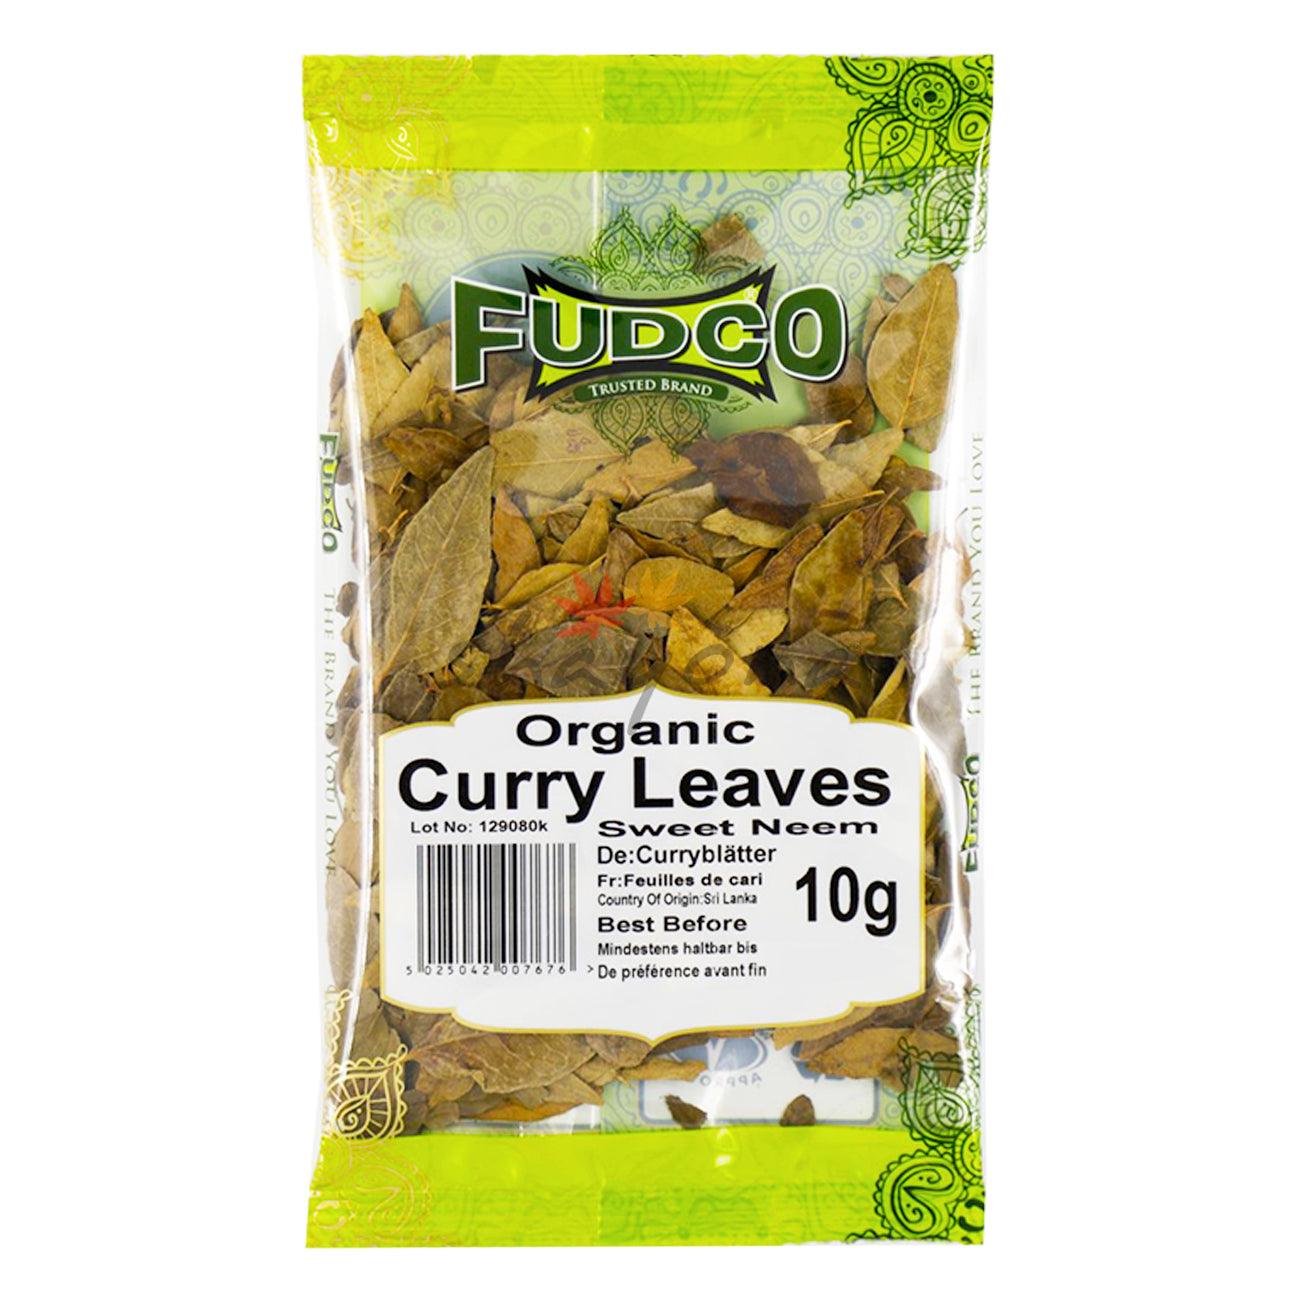 Fudco Organic Curry Leaves - Shayona UK